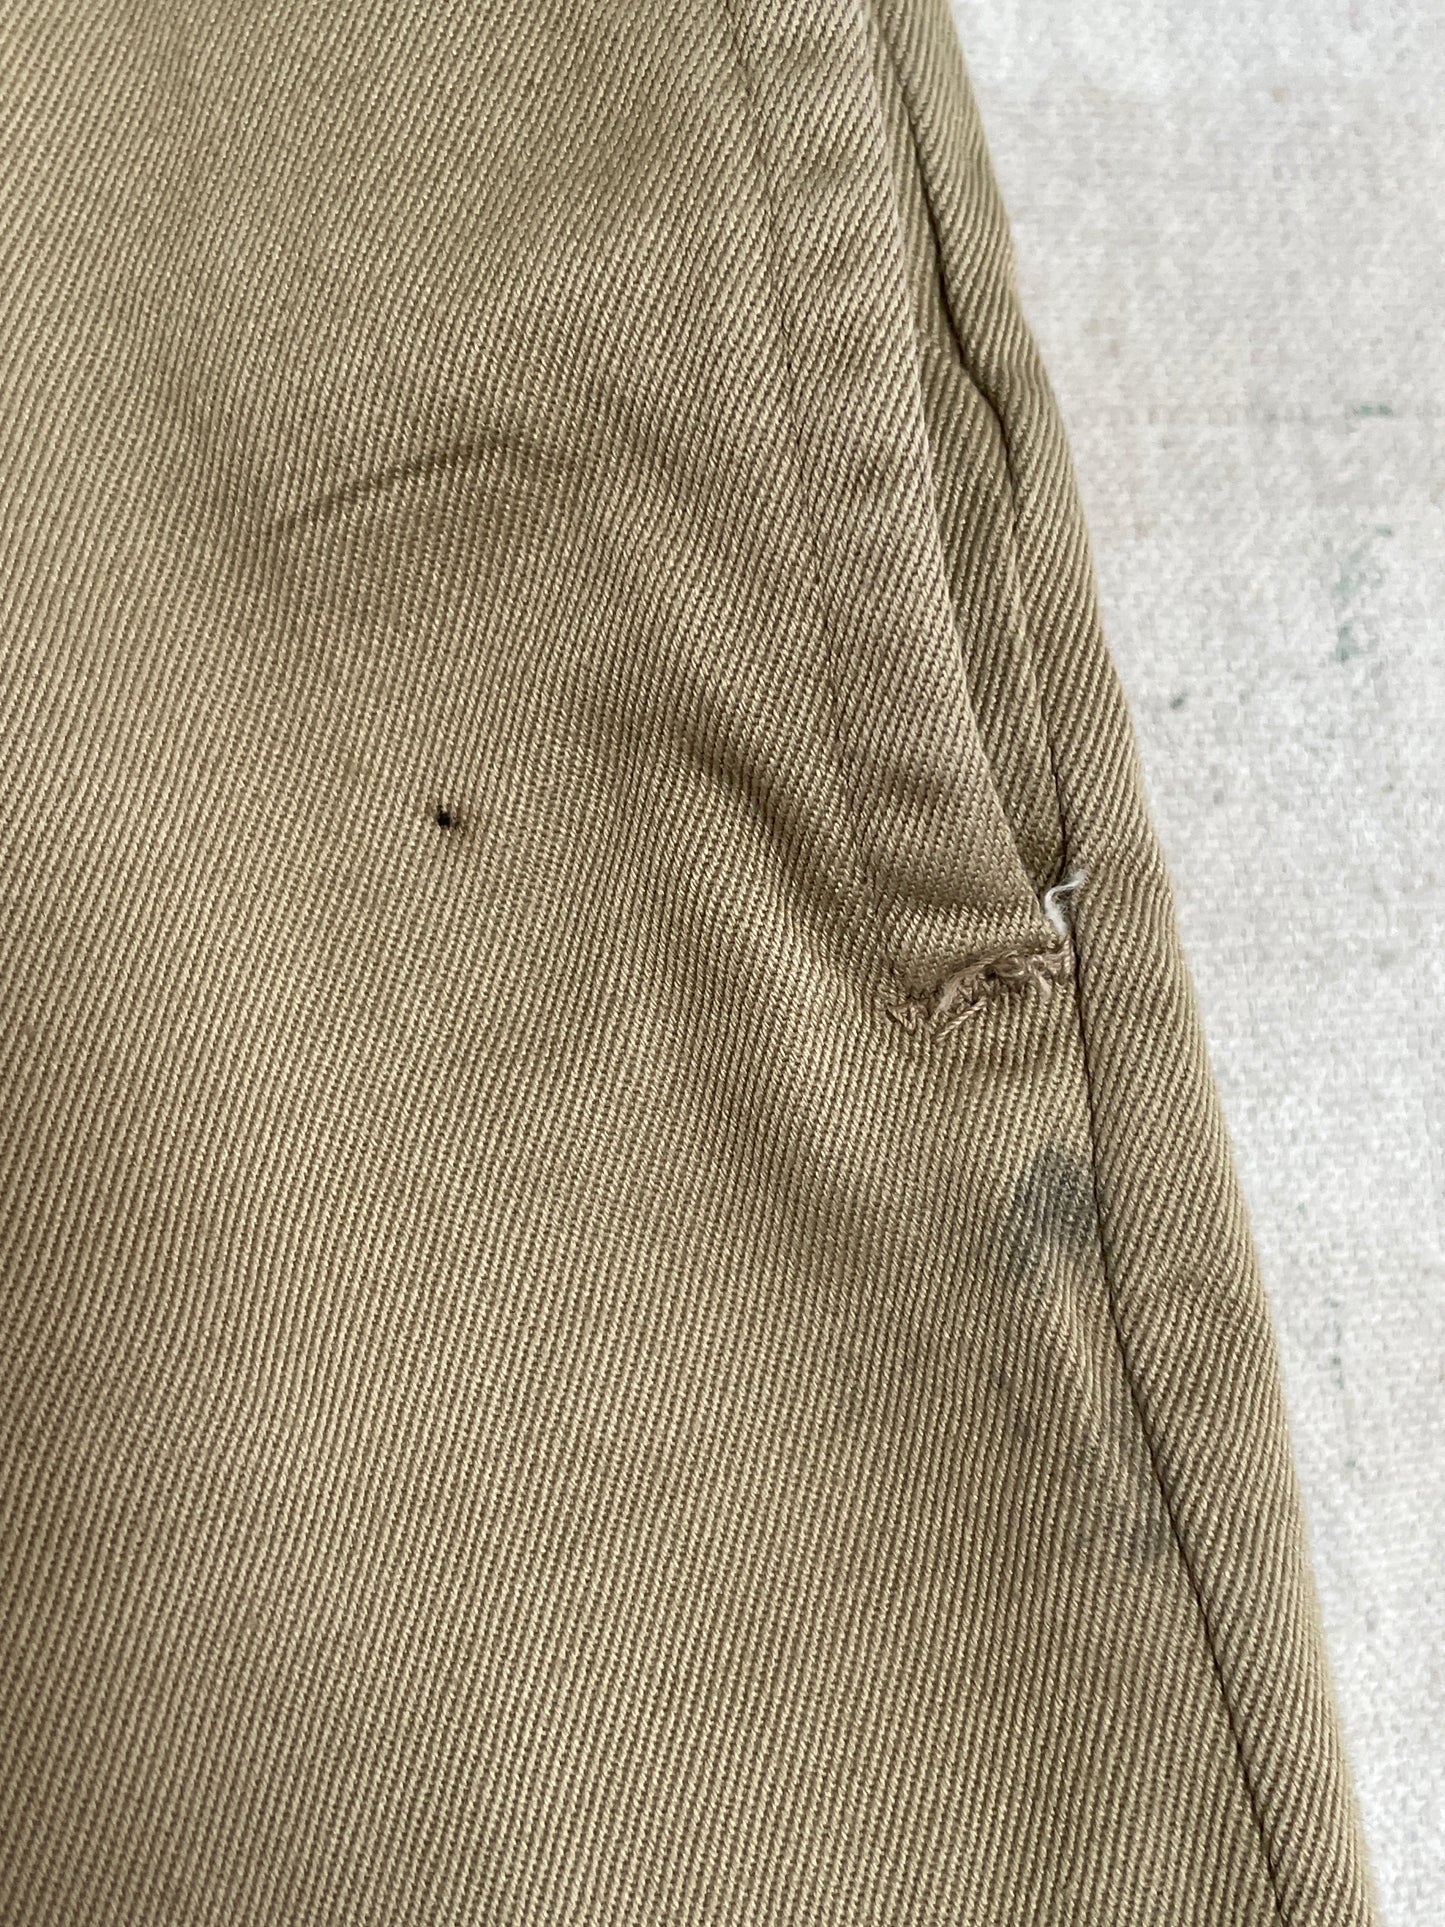 60s Military Khaki Trousers